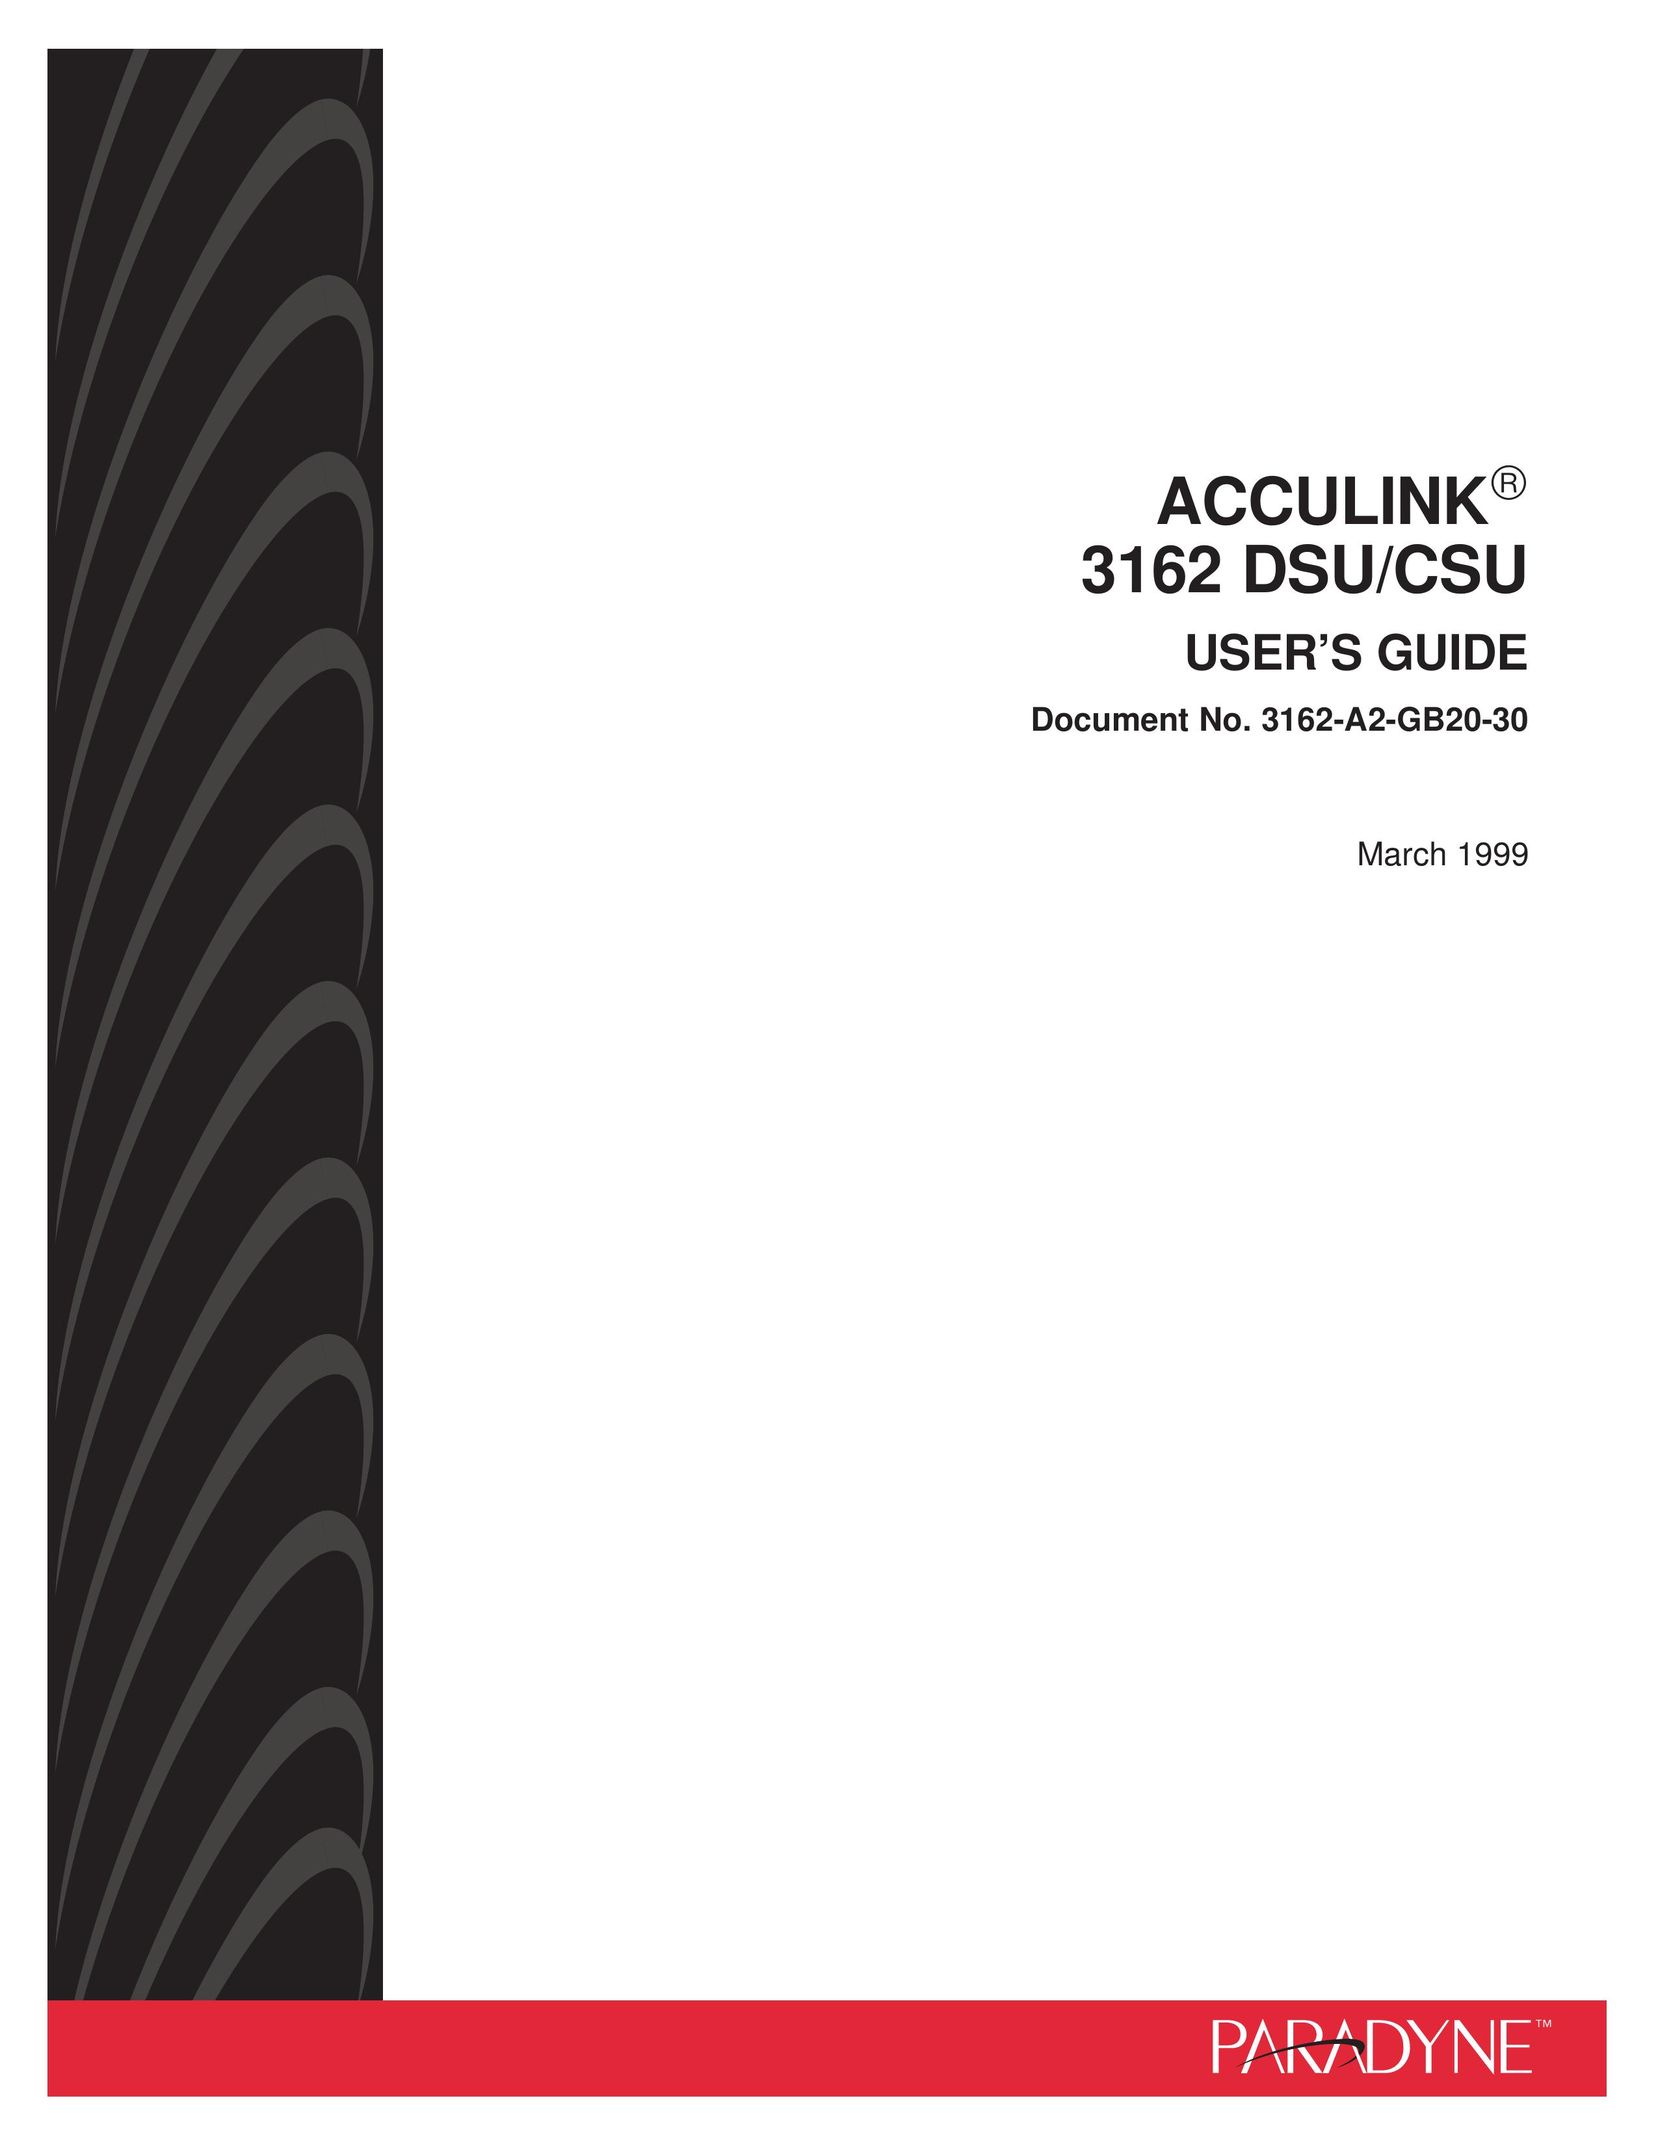 Paradyne 3162 DSU/CSU Network Card User Manual